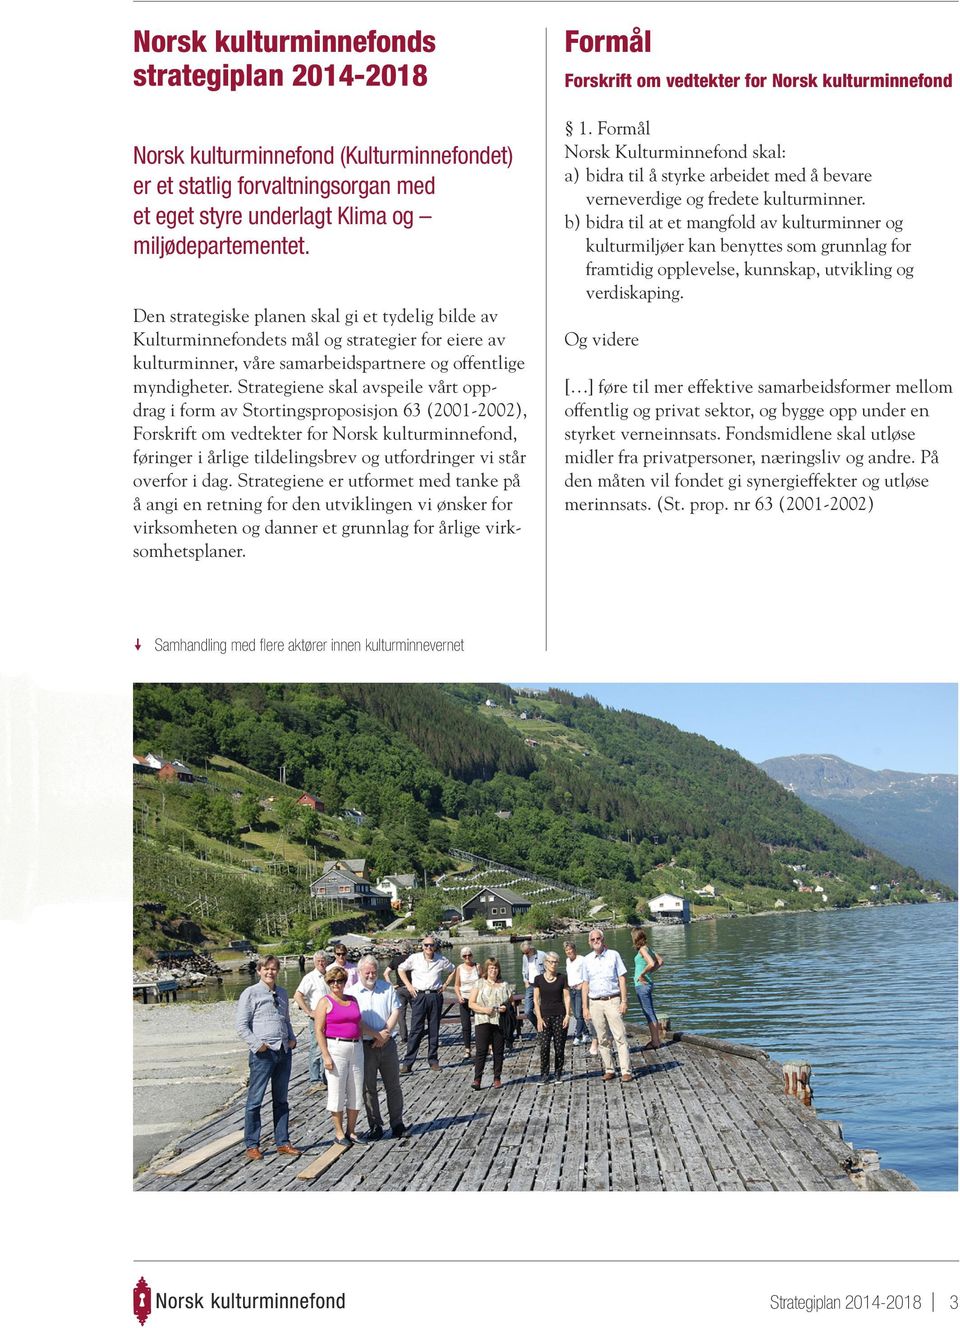 Strategiene skal avspeile vårt oppdrag i form av Stortingsproposisjon 63 (2001-2002), Forskrift om vedtekter for Norsk kulturminnefond, føringer i årlige tildelingsbrev og utfordringer vi står